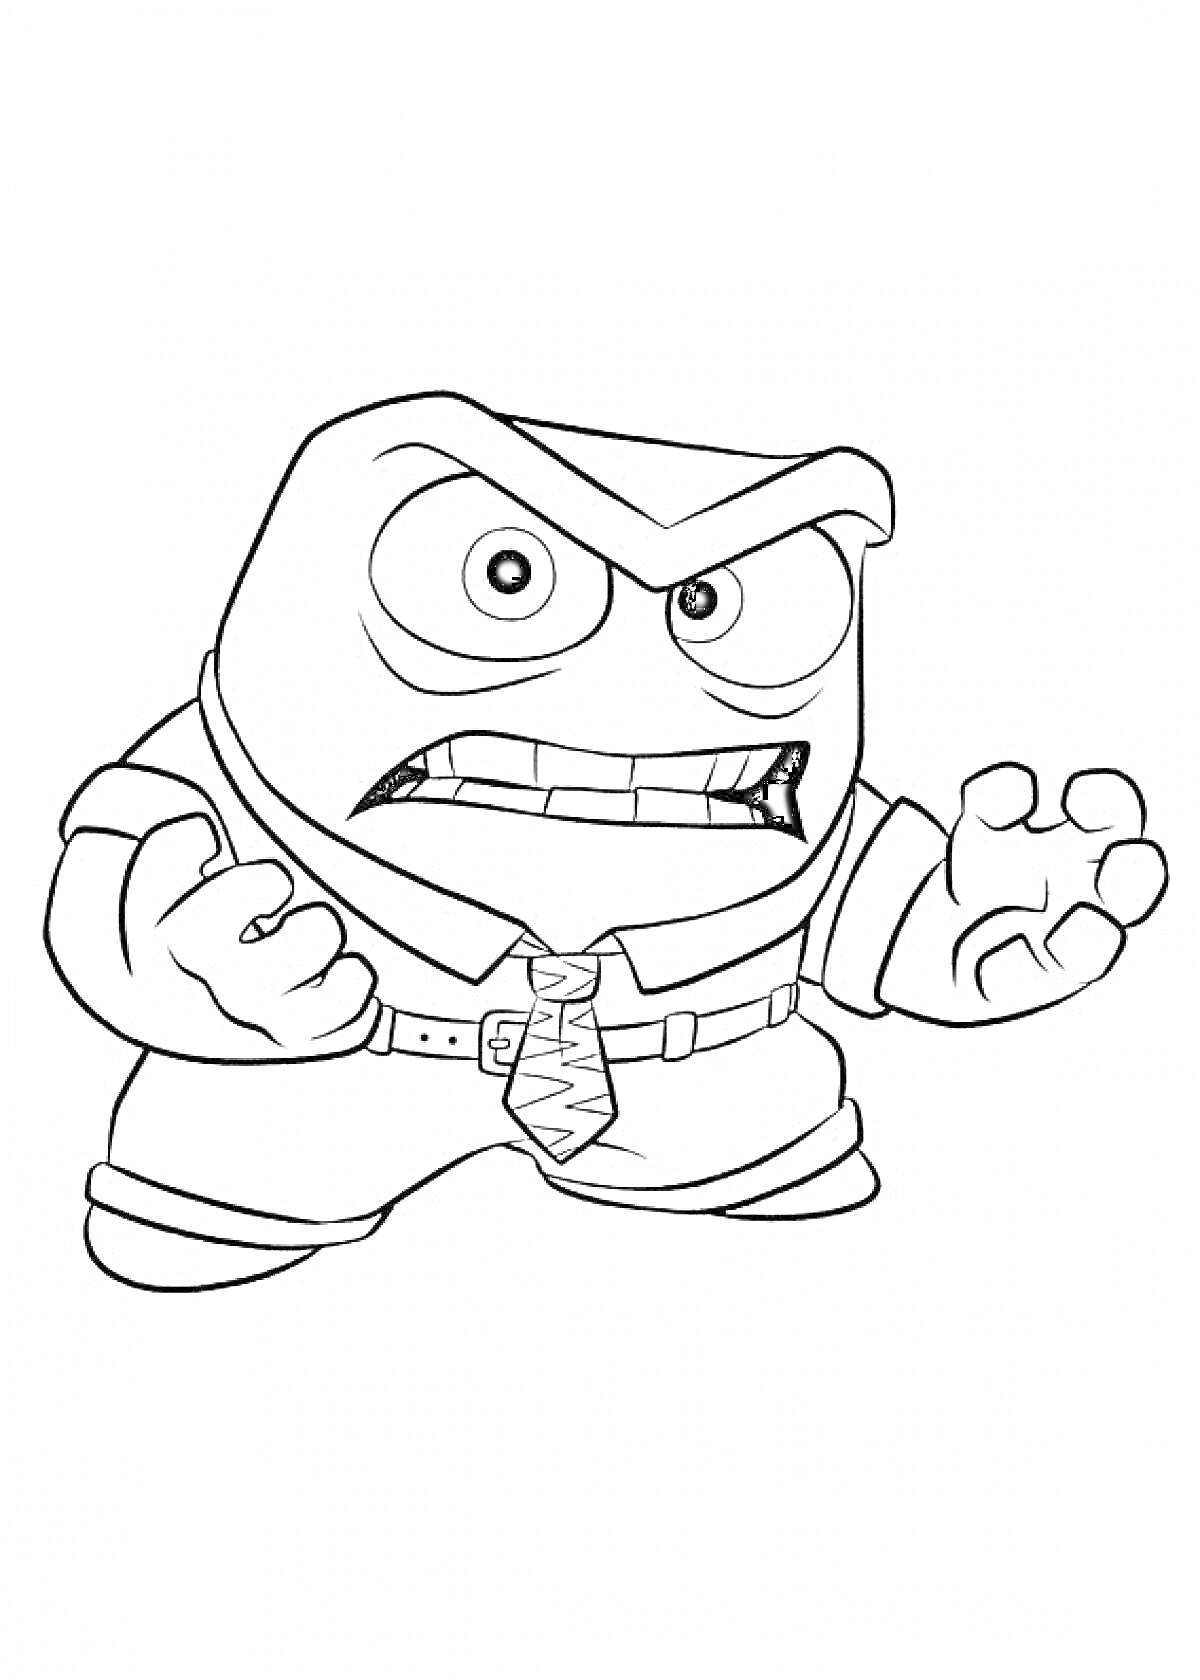 Раскраска Персонаж в костюме с галстуком из мультфильма 